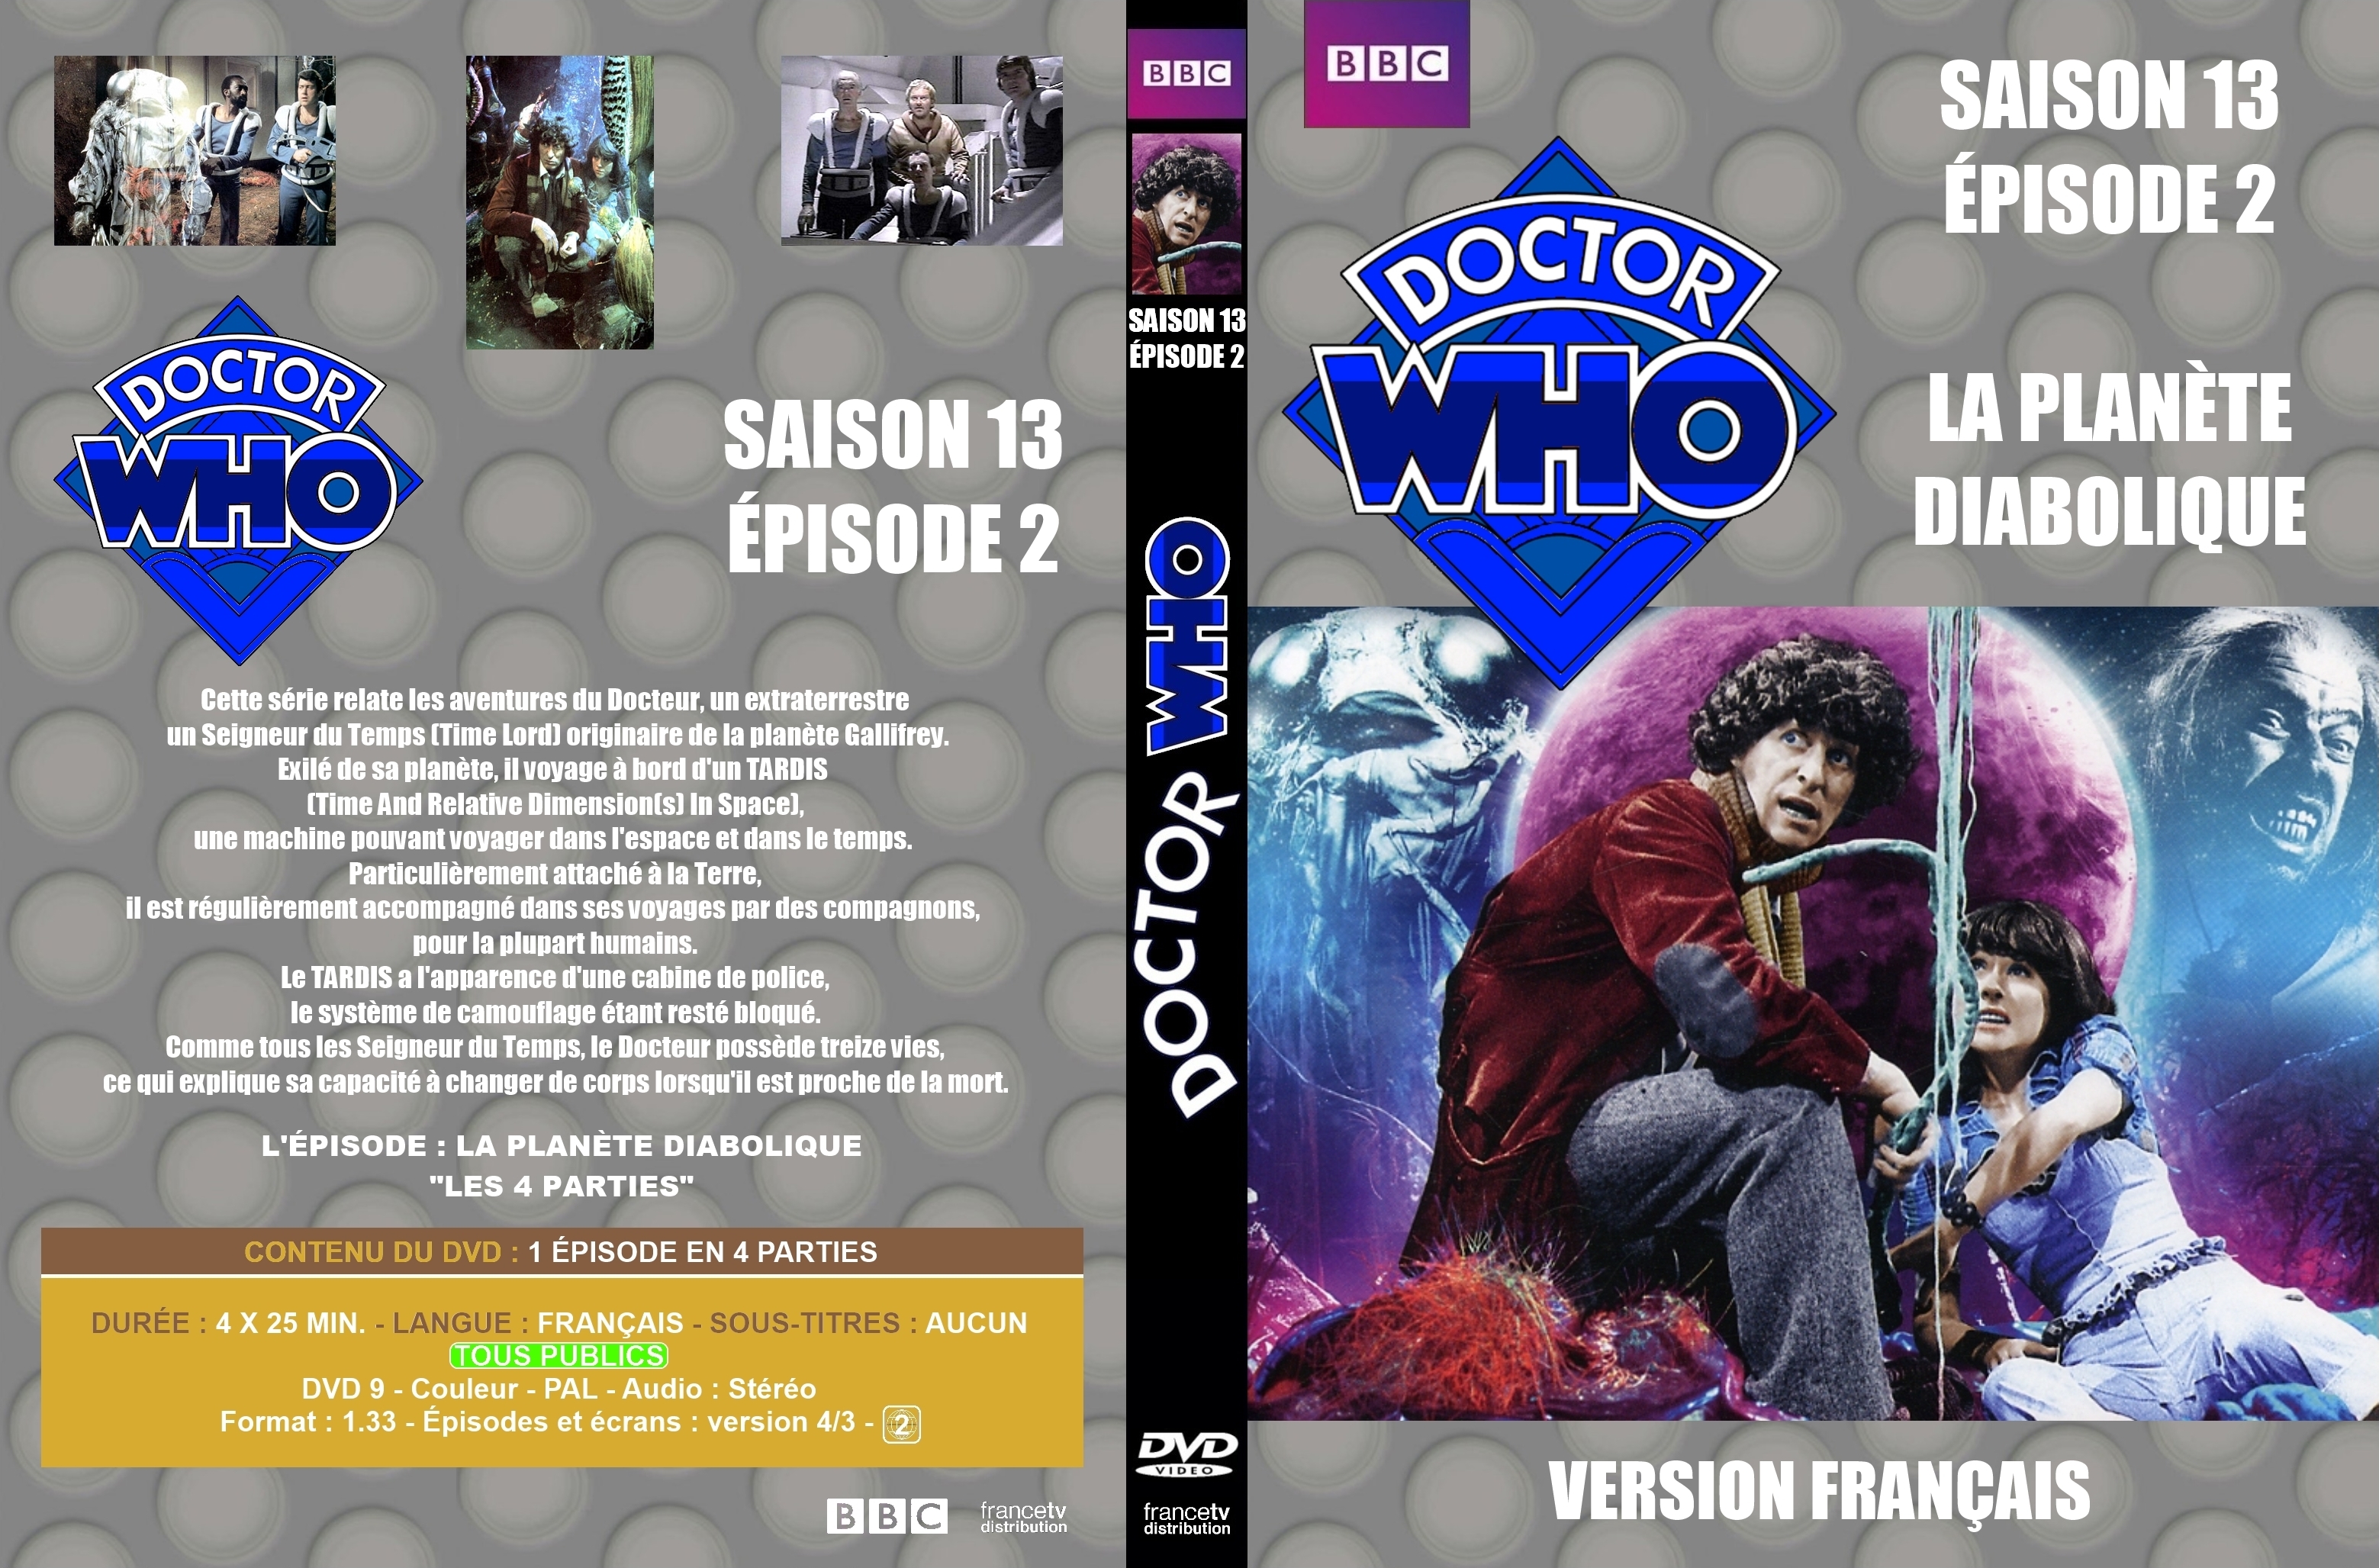 Jaquette DVD de Doctor Who Classic Saison 13 épisode 2 custom